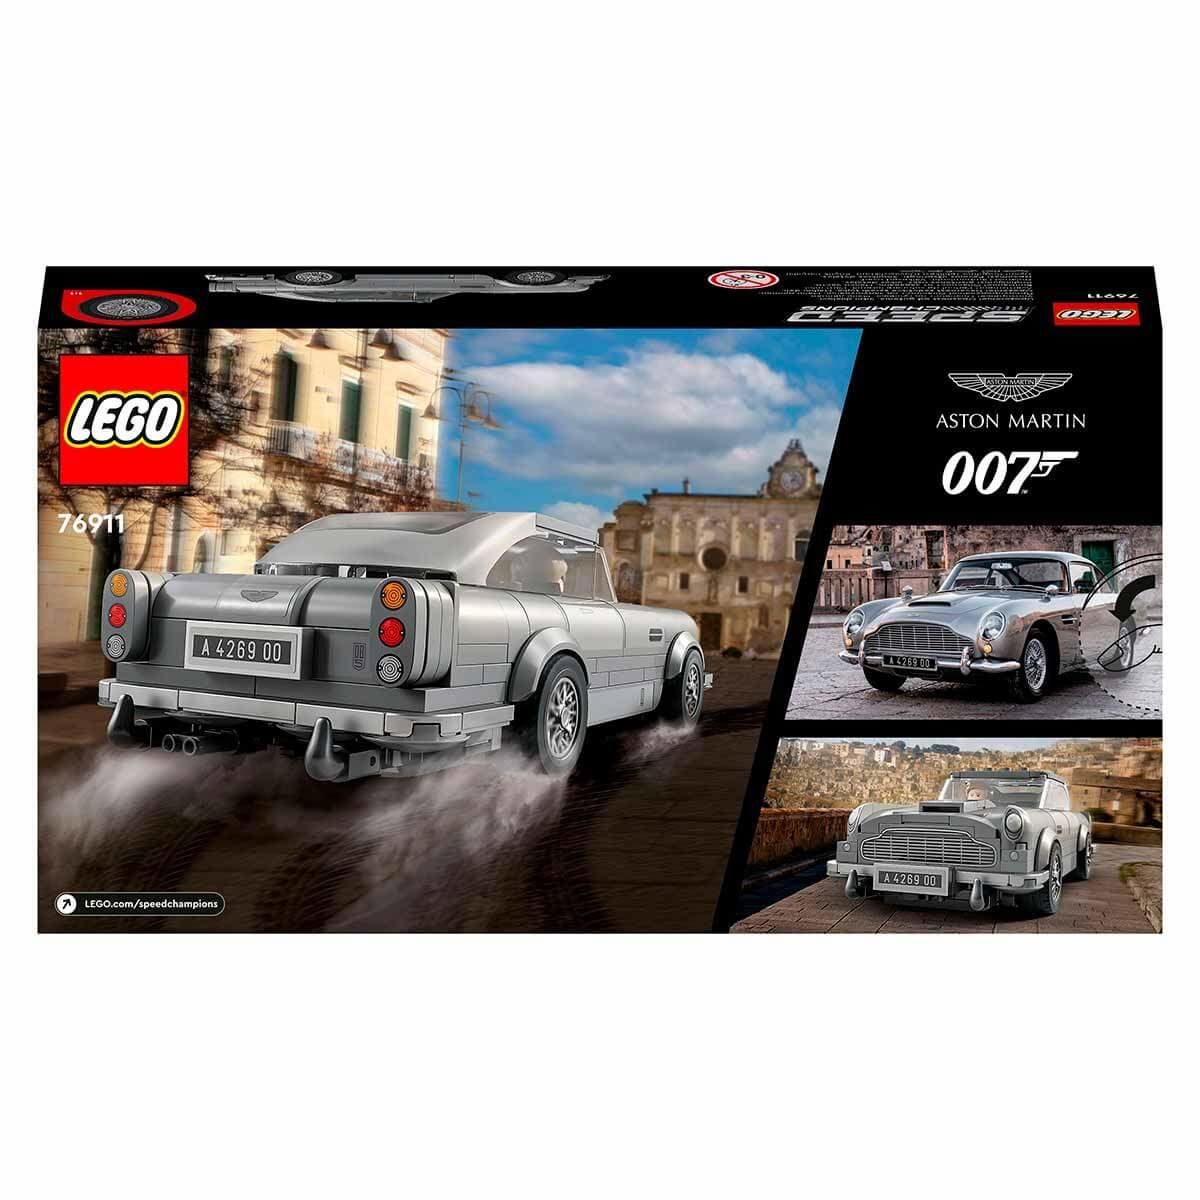 CLZ193 Lego Speed  007 Aston Martin 76911